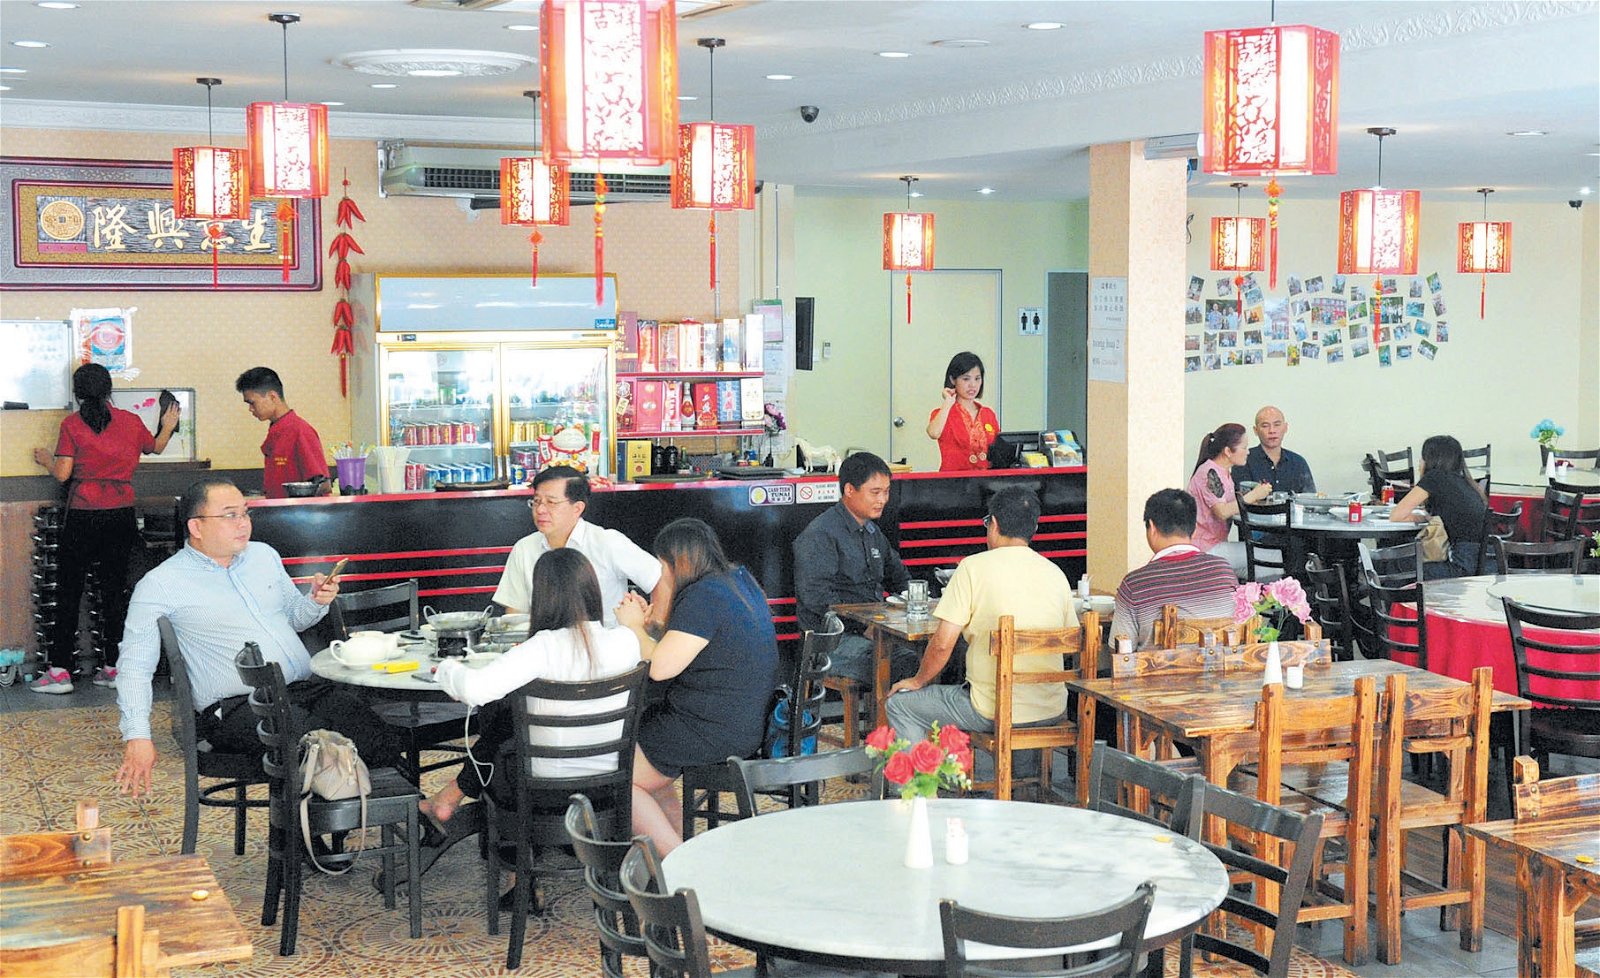 中华风味湘菜馆的布置摆设都有中国特色。